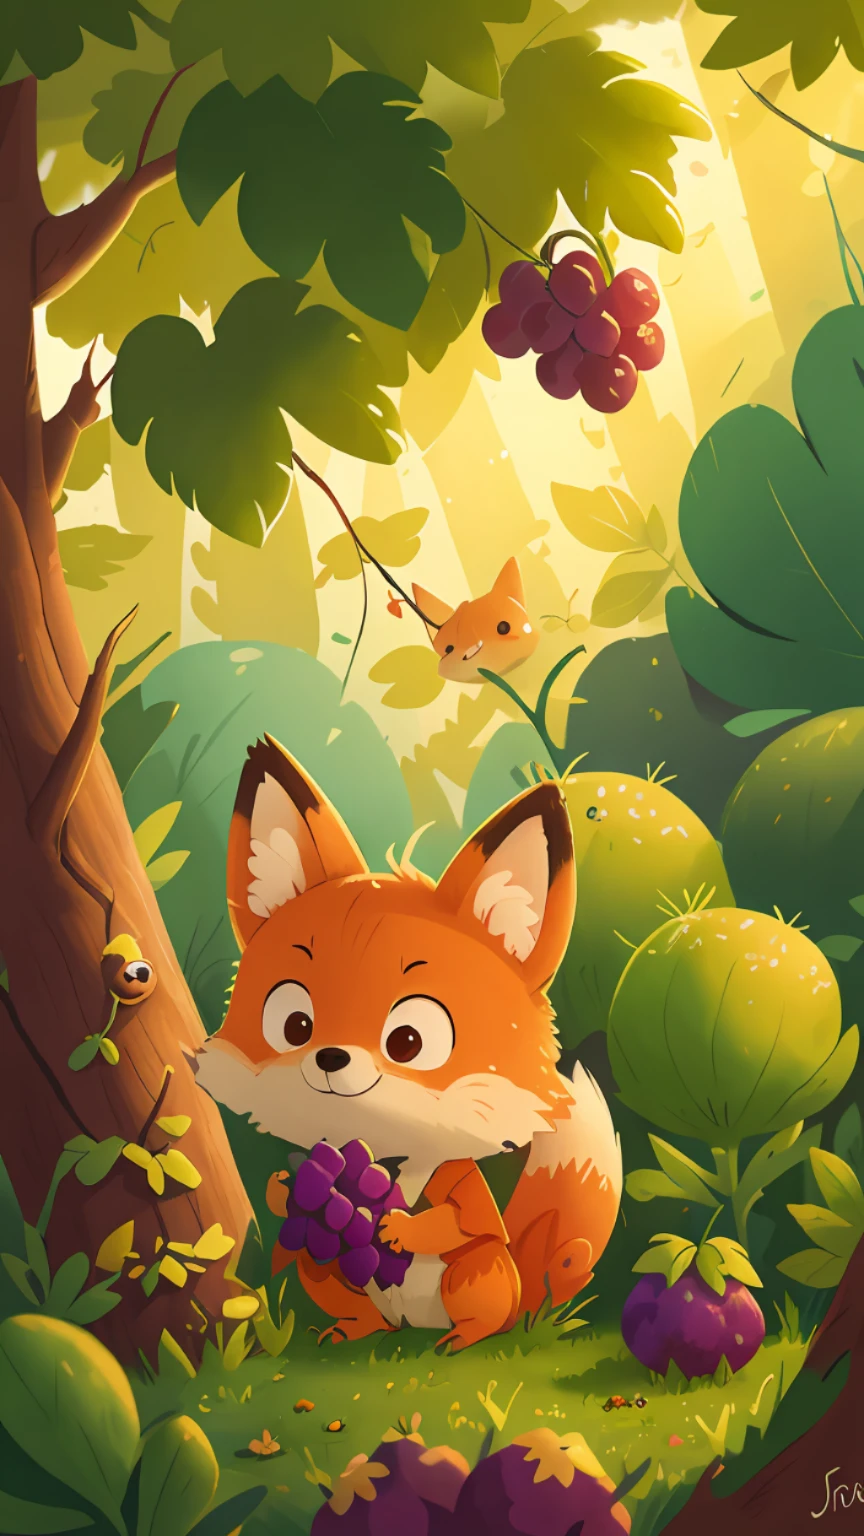 Ein kleiner Fuchs betrachtet die Trauben am Baum